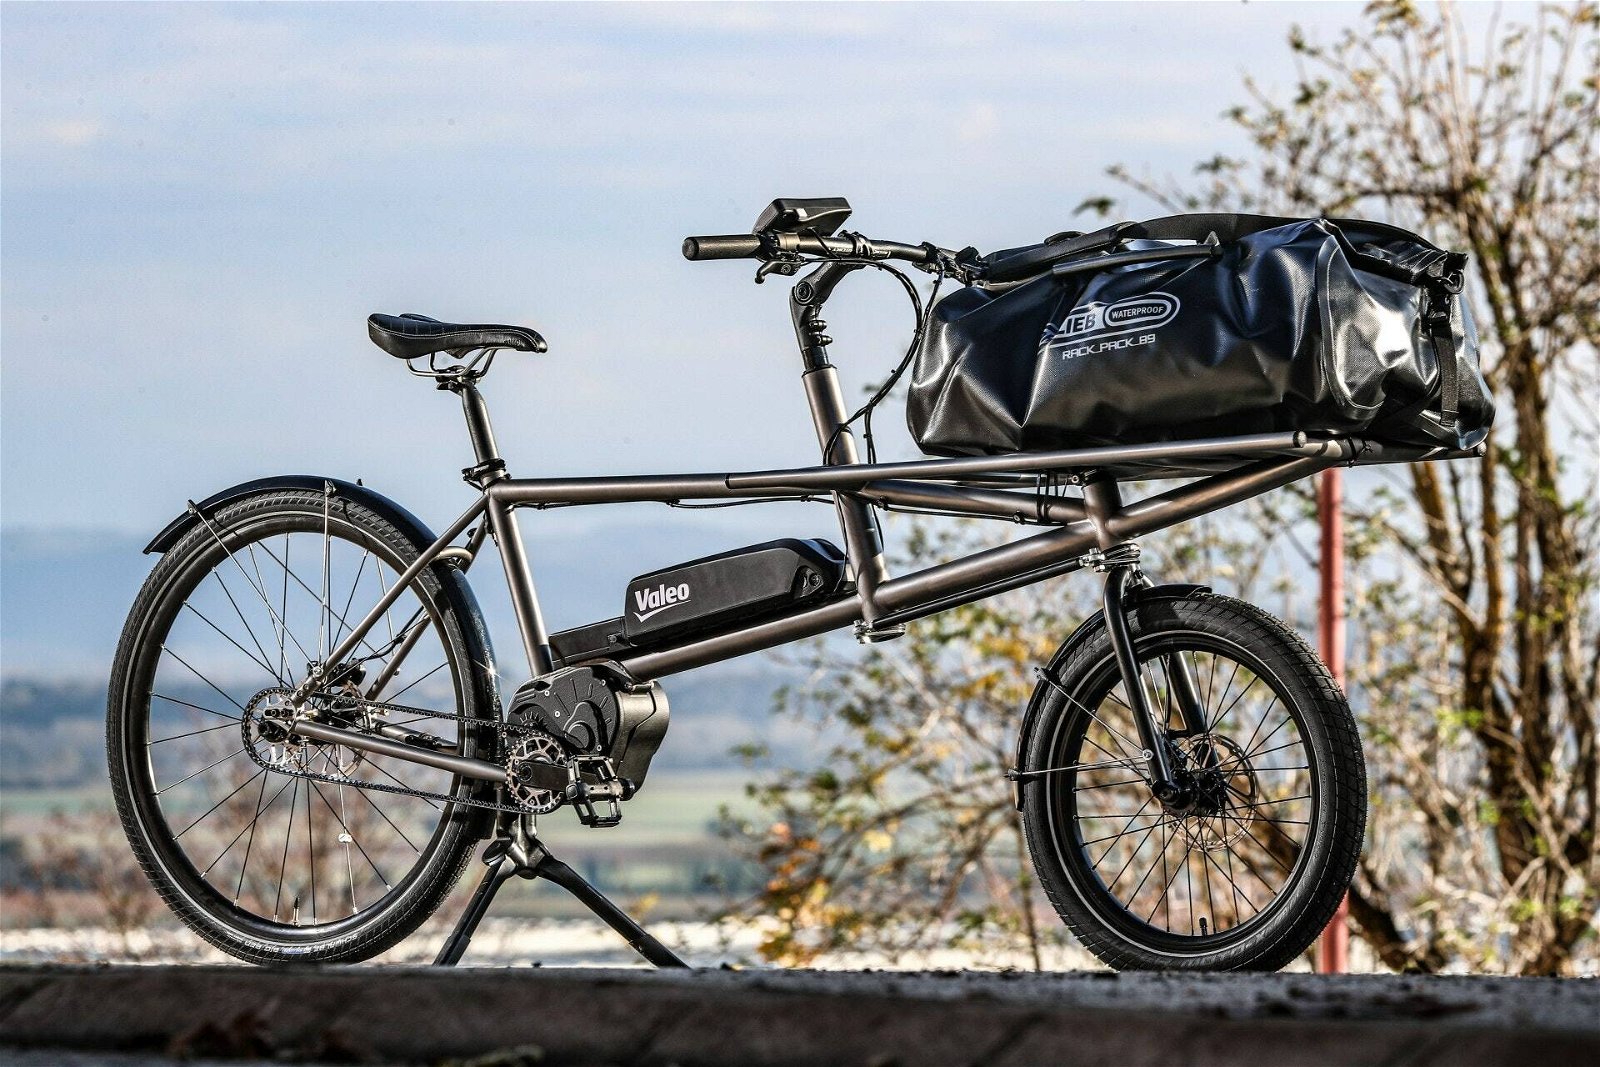 Immagine di Valeo, nuova trasmissione per bici elettriche: pedalata assistita e cambio automatico